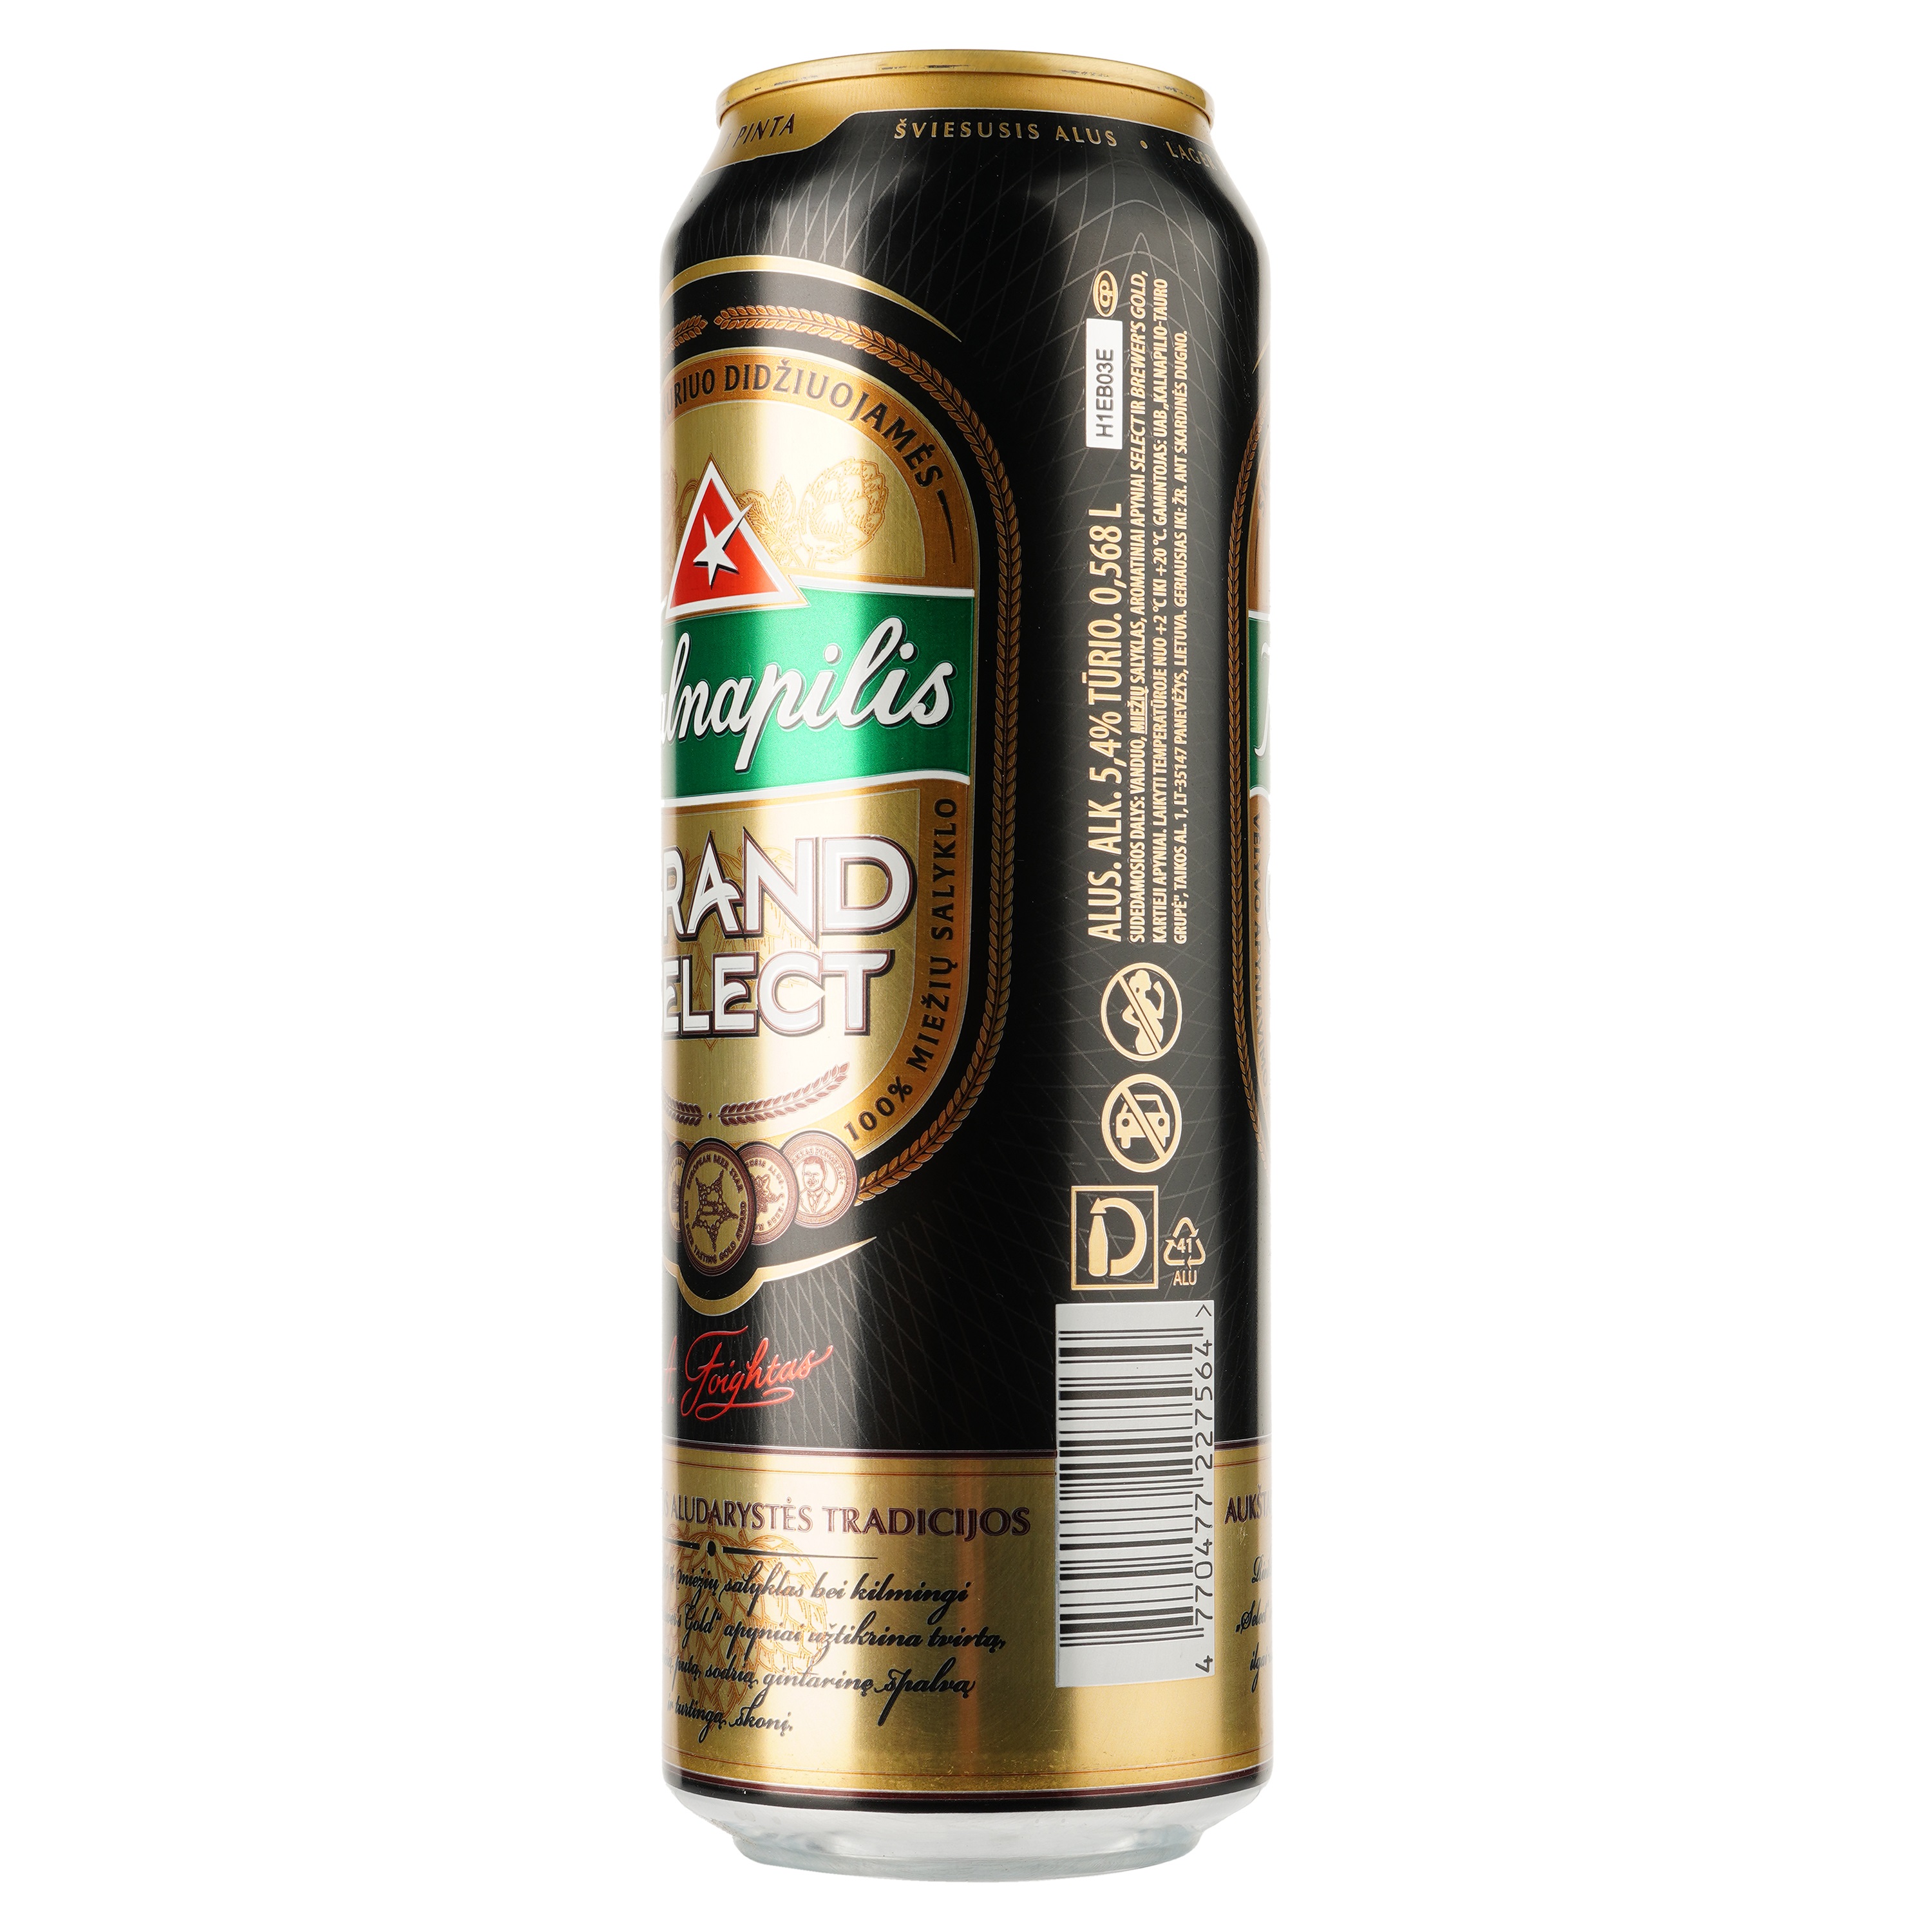 Пиво Kalnapilis Grand Select, світле, фільтроване, 5,4%, з/б, 0,568 л - фото 2